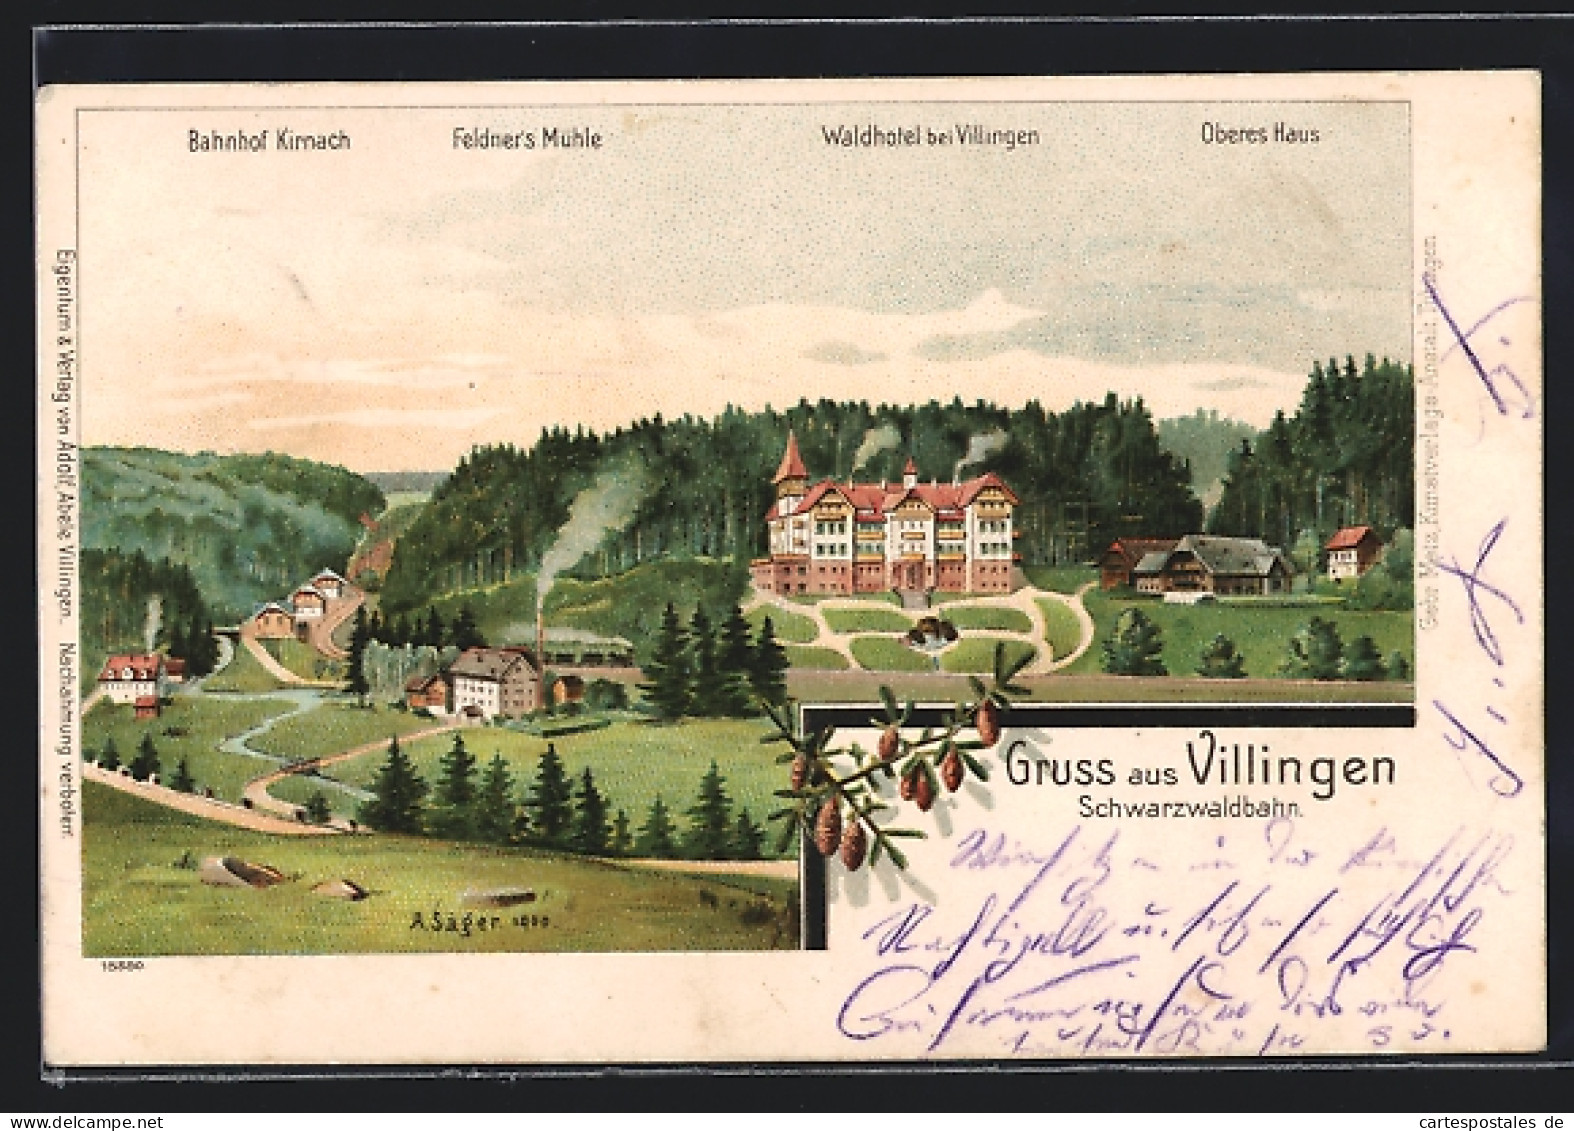 Lithographie Villingen / Baden, Waldhotel, Oberes Haus, Bahnhof Kirnach Und Feldner`s Mühle  - Baden-Baden